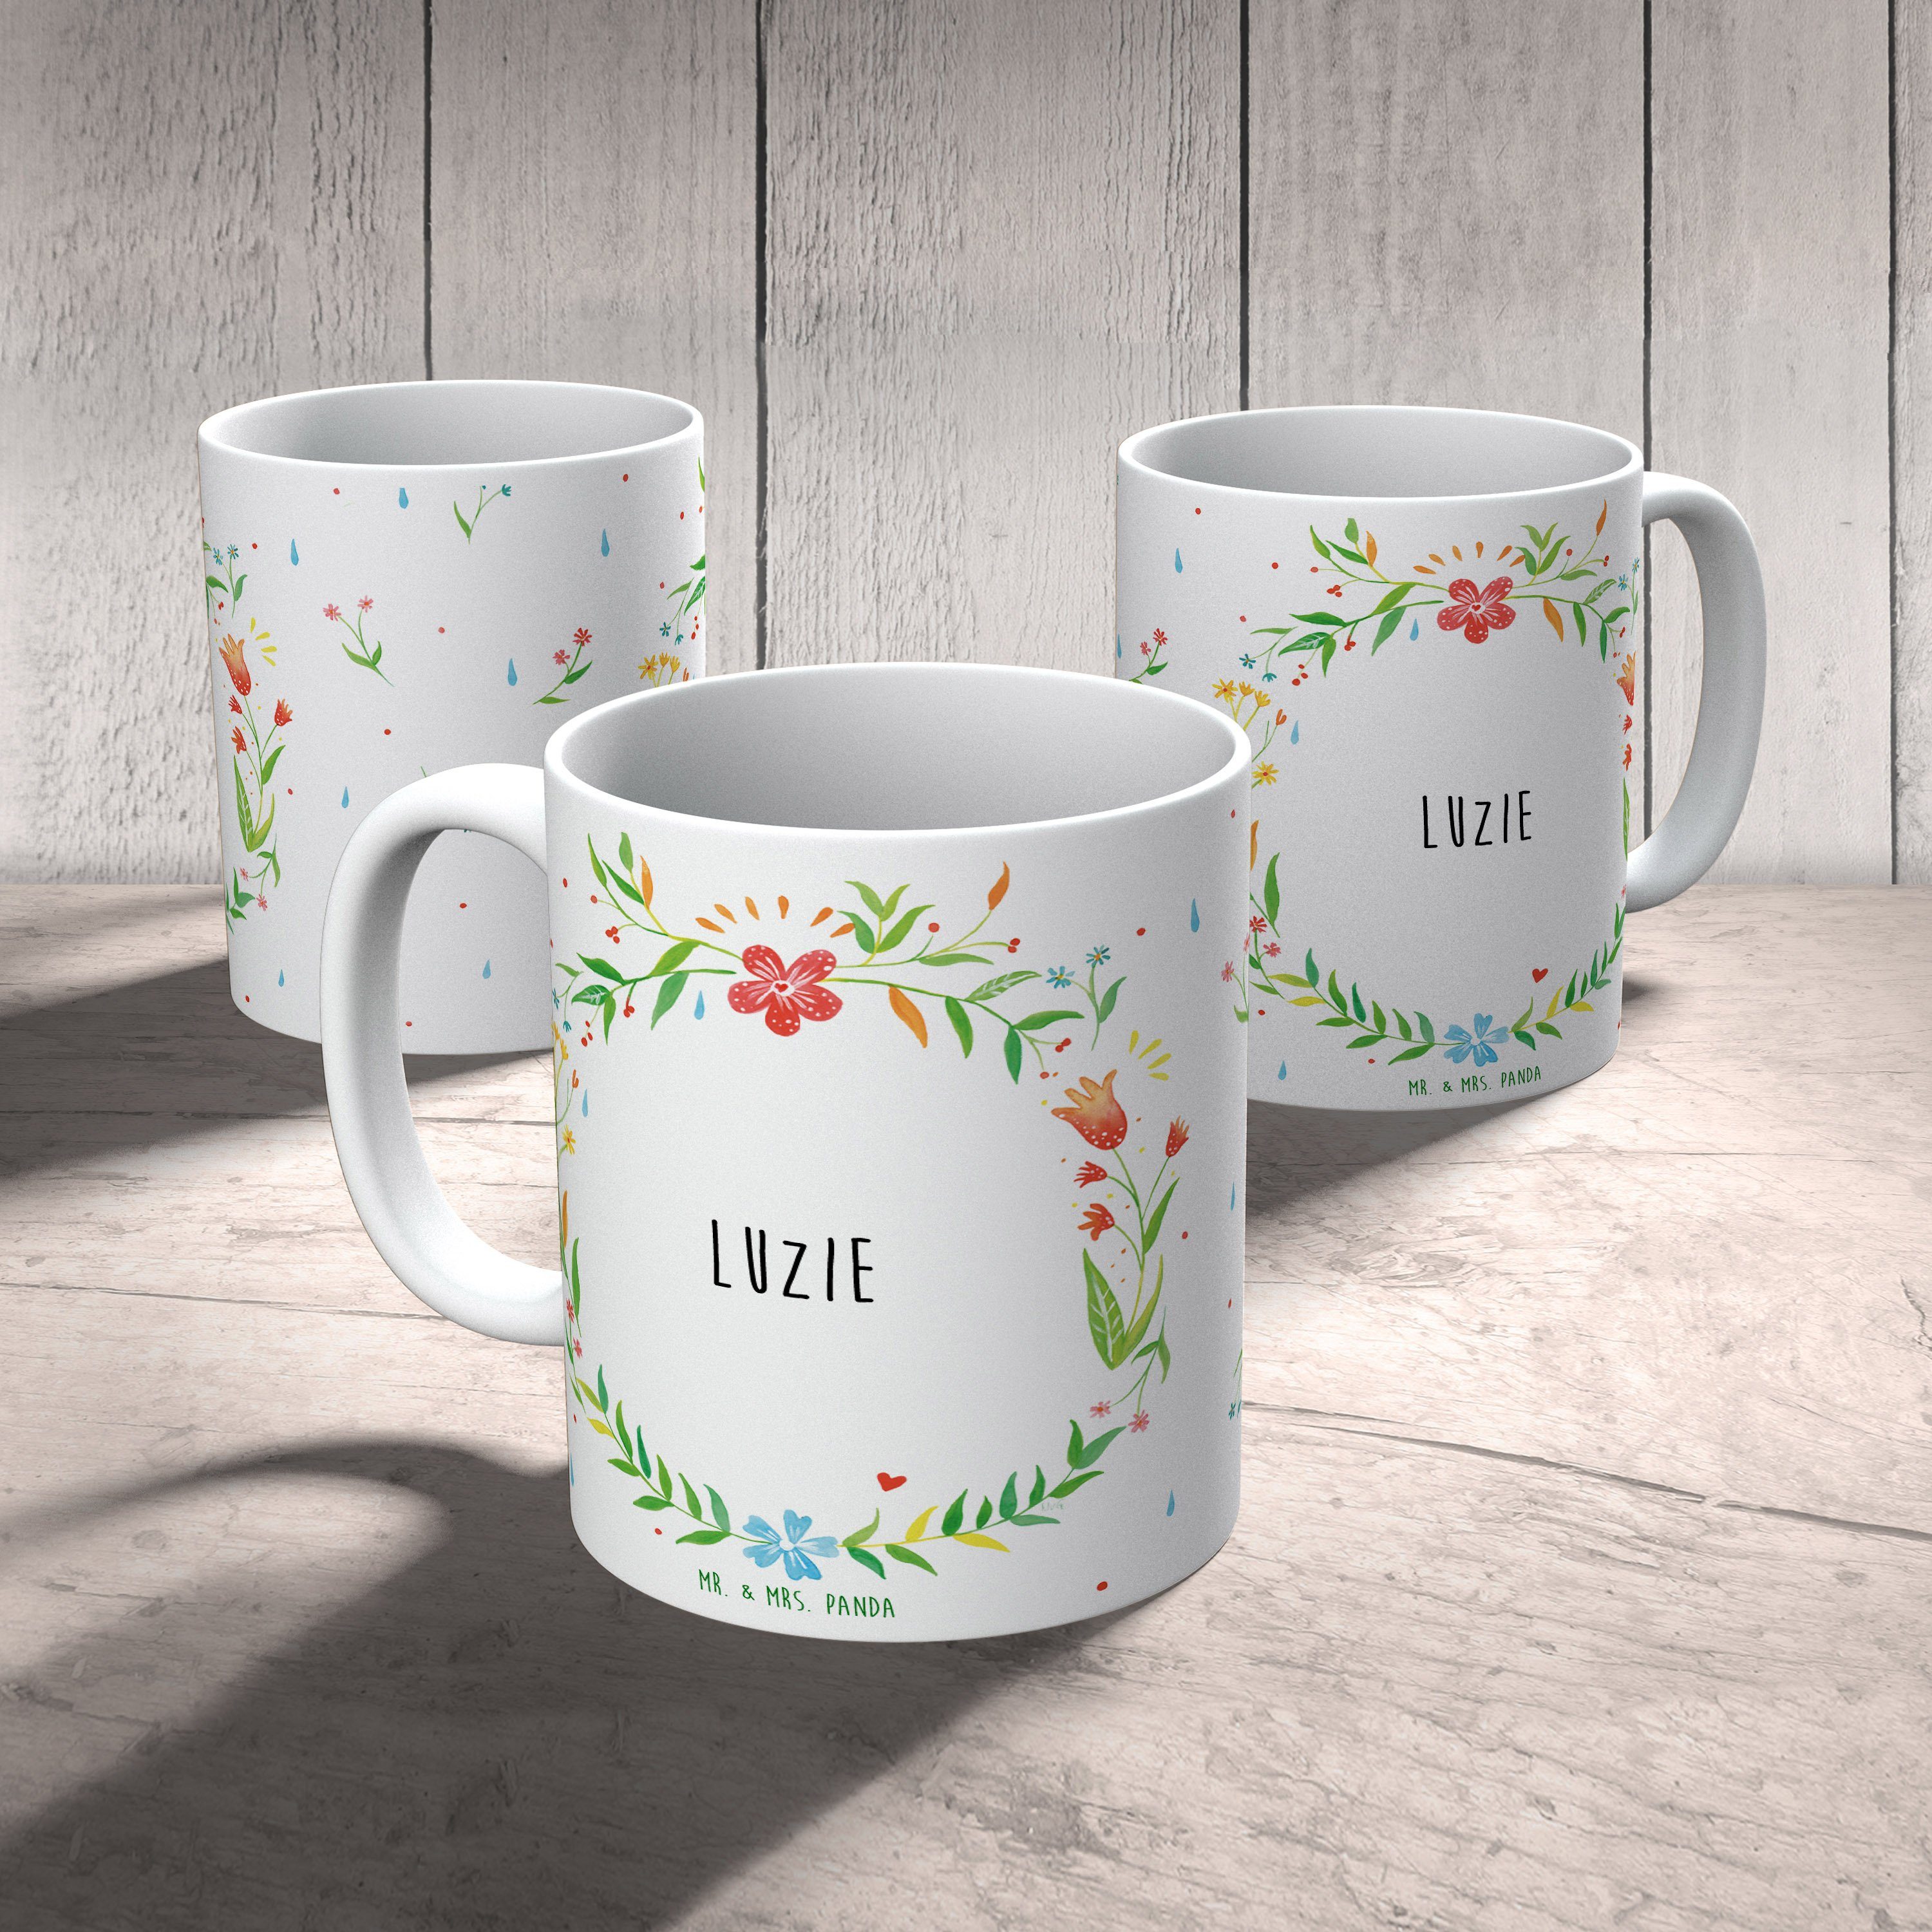 Bü, Panda Keramiktasse, Geschenk, Mrs. & Tasse, Kaffeetasse, - Mr. Luzie Tasse Keramik Sprüche, Tasse